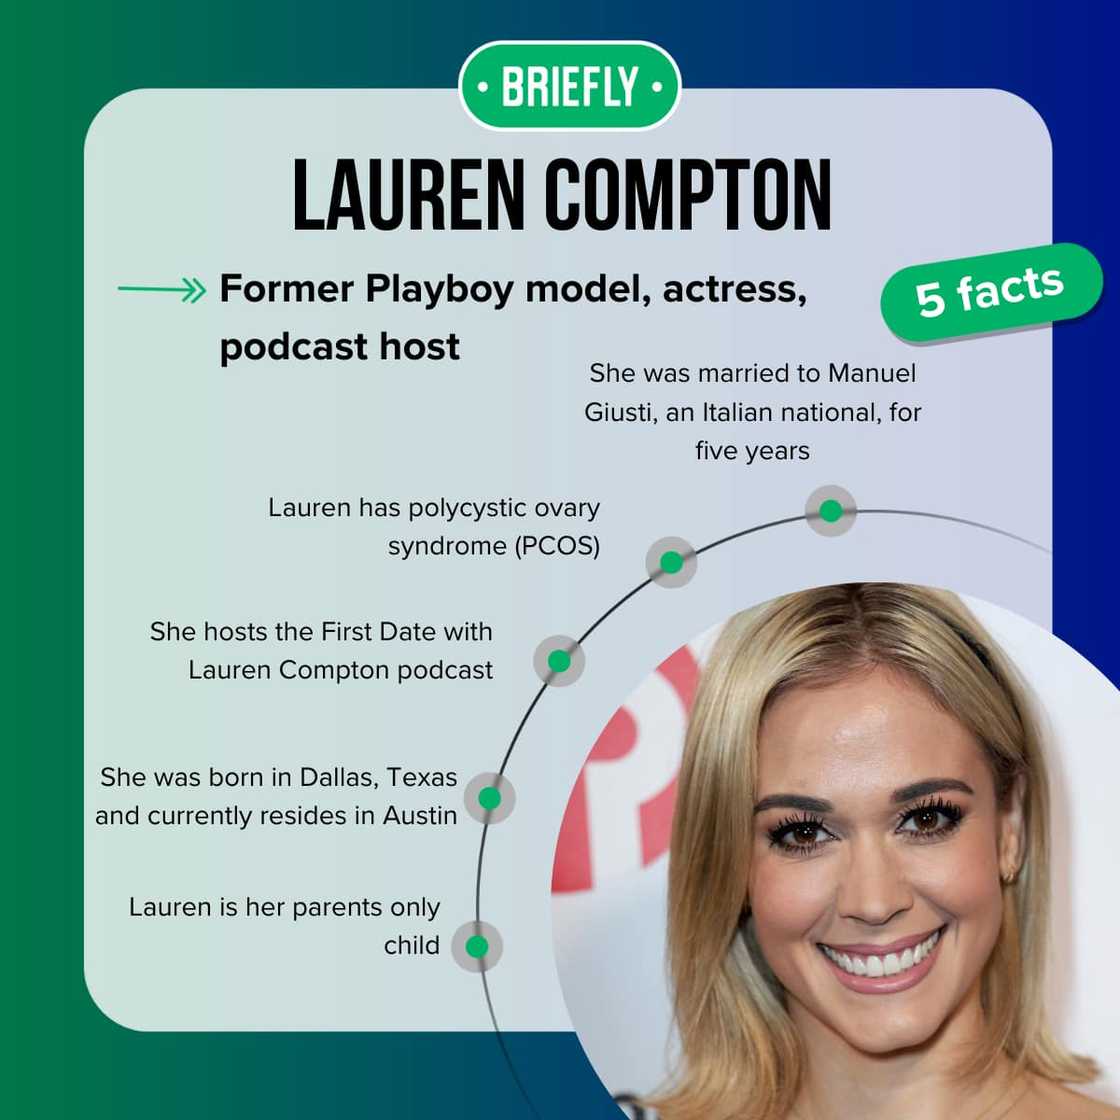 Lauren Compton's facts